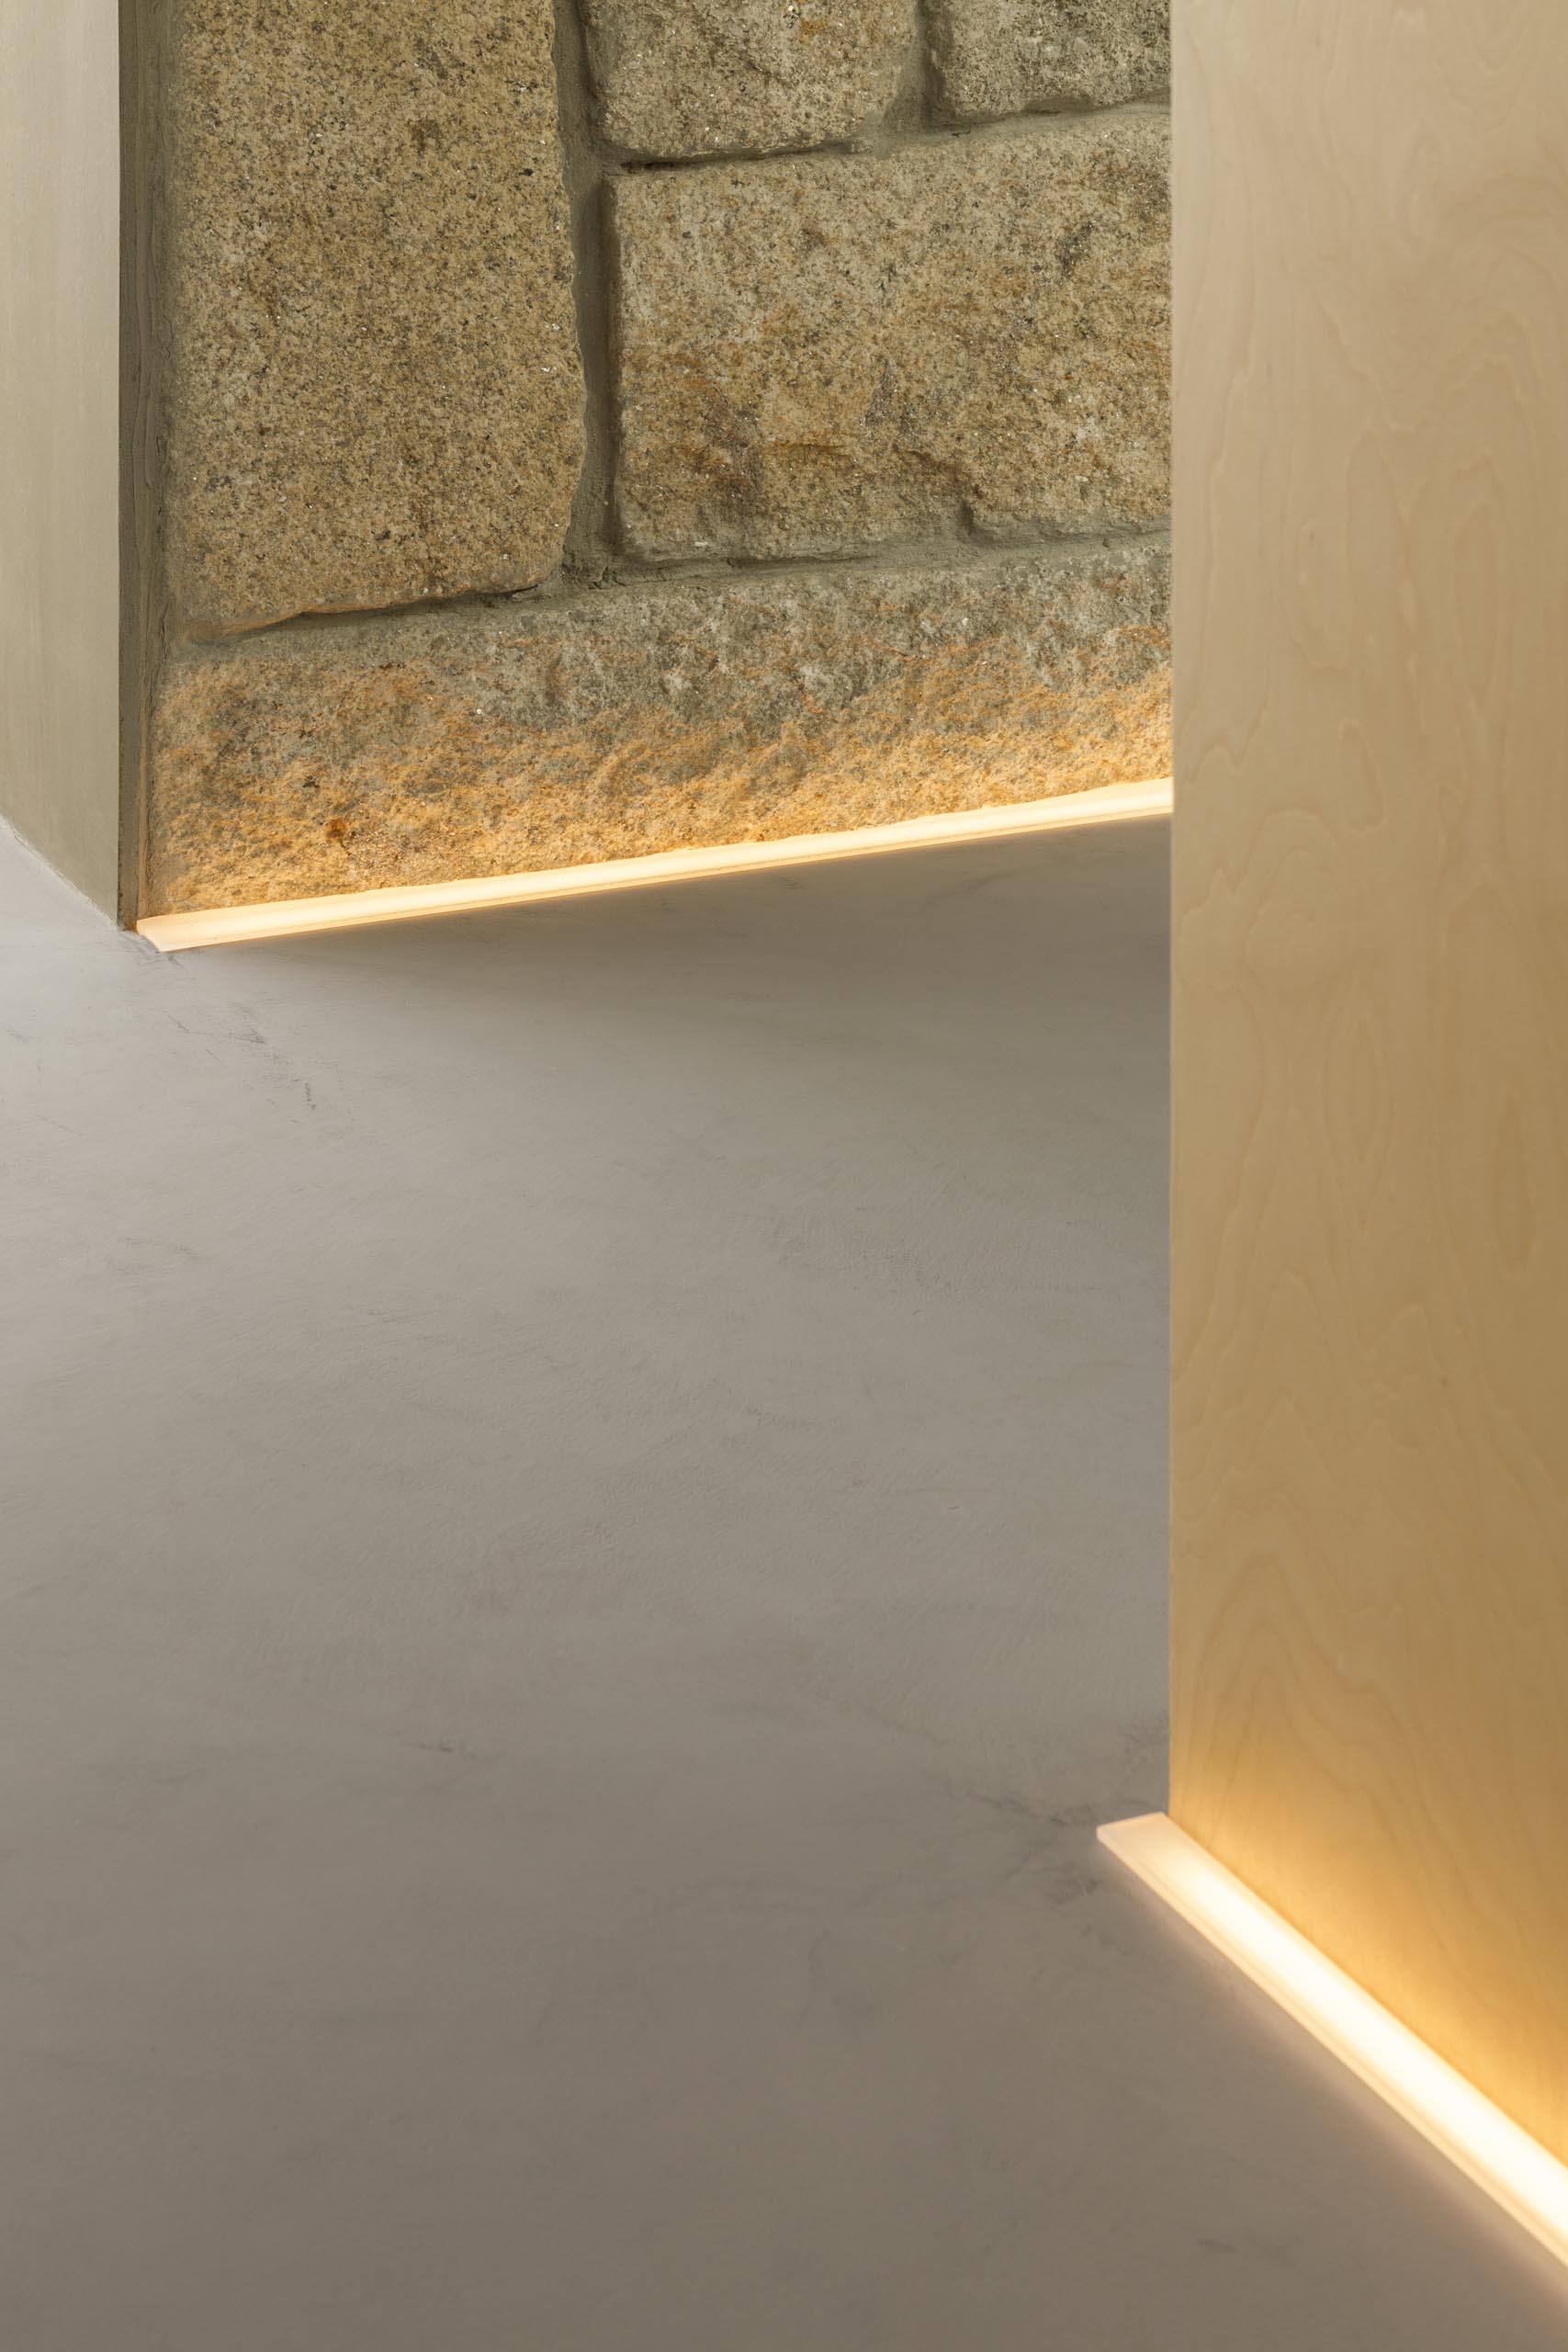 Коридор с каменными и деревянными стенами освещен светодиодной подсветкой на полу.